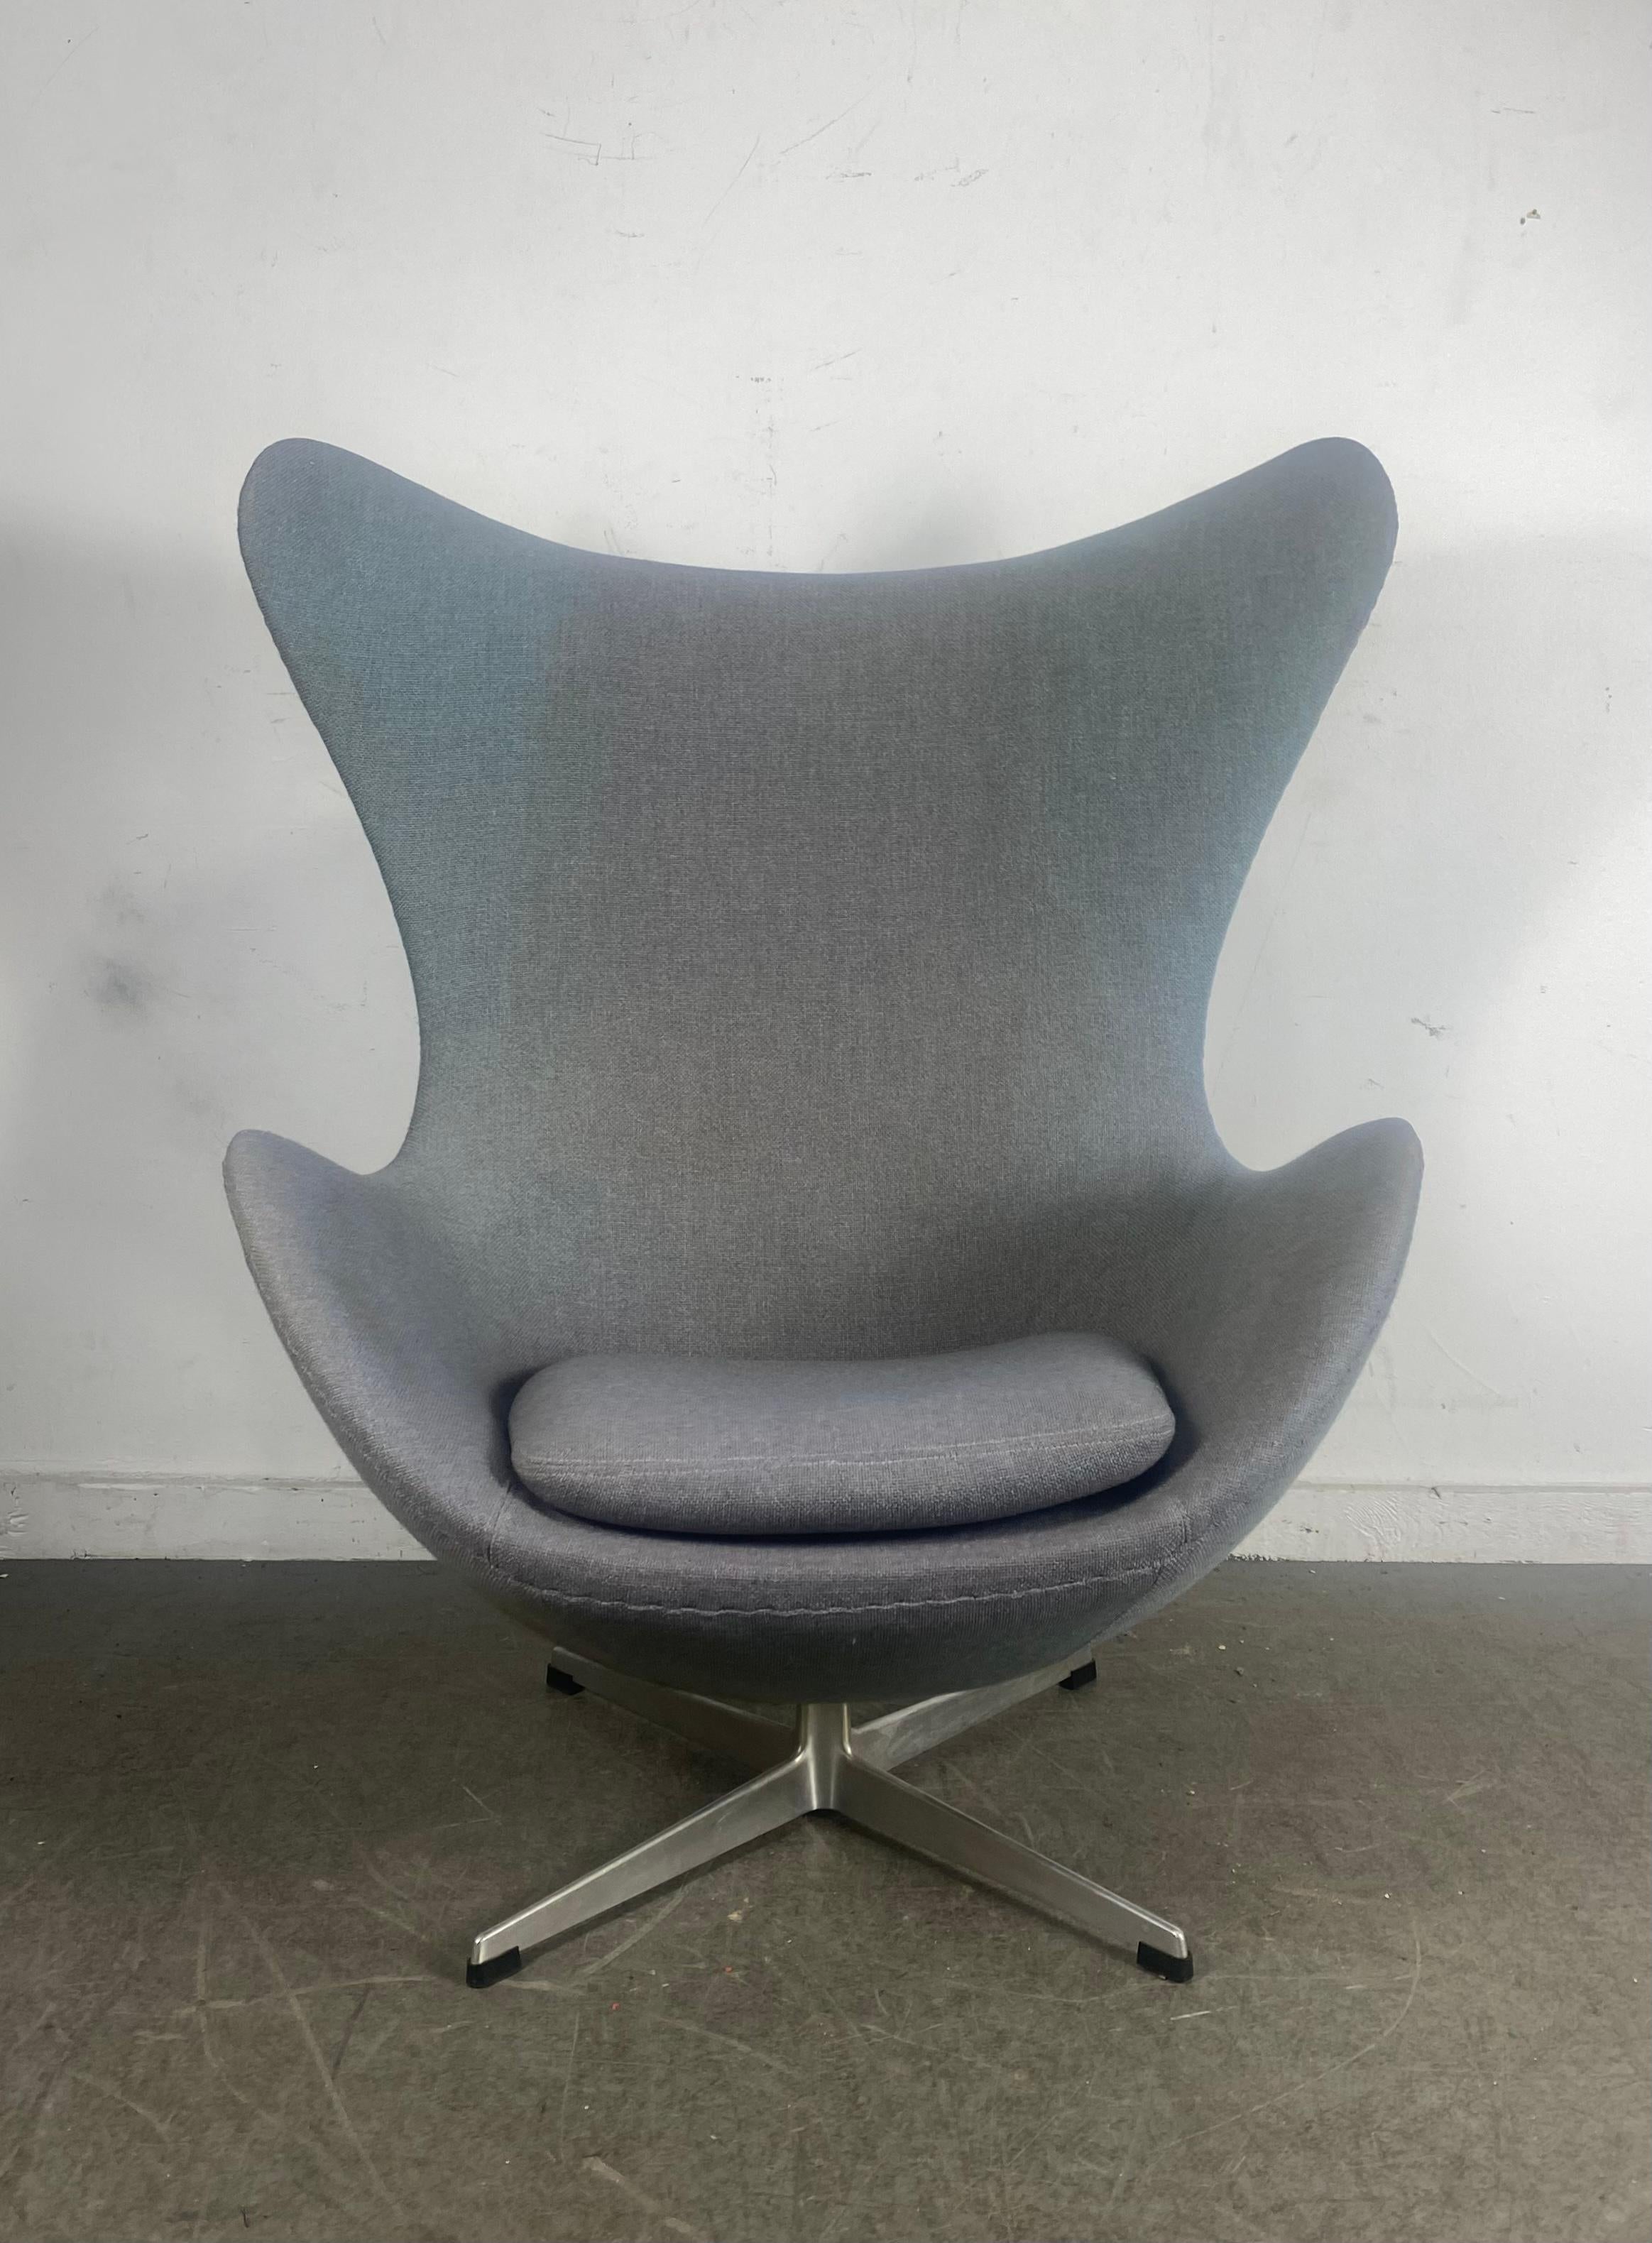 Classic 1960s  Egg Chair designed by Arne Jacobsen for Fritzhansen / Denmark 1